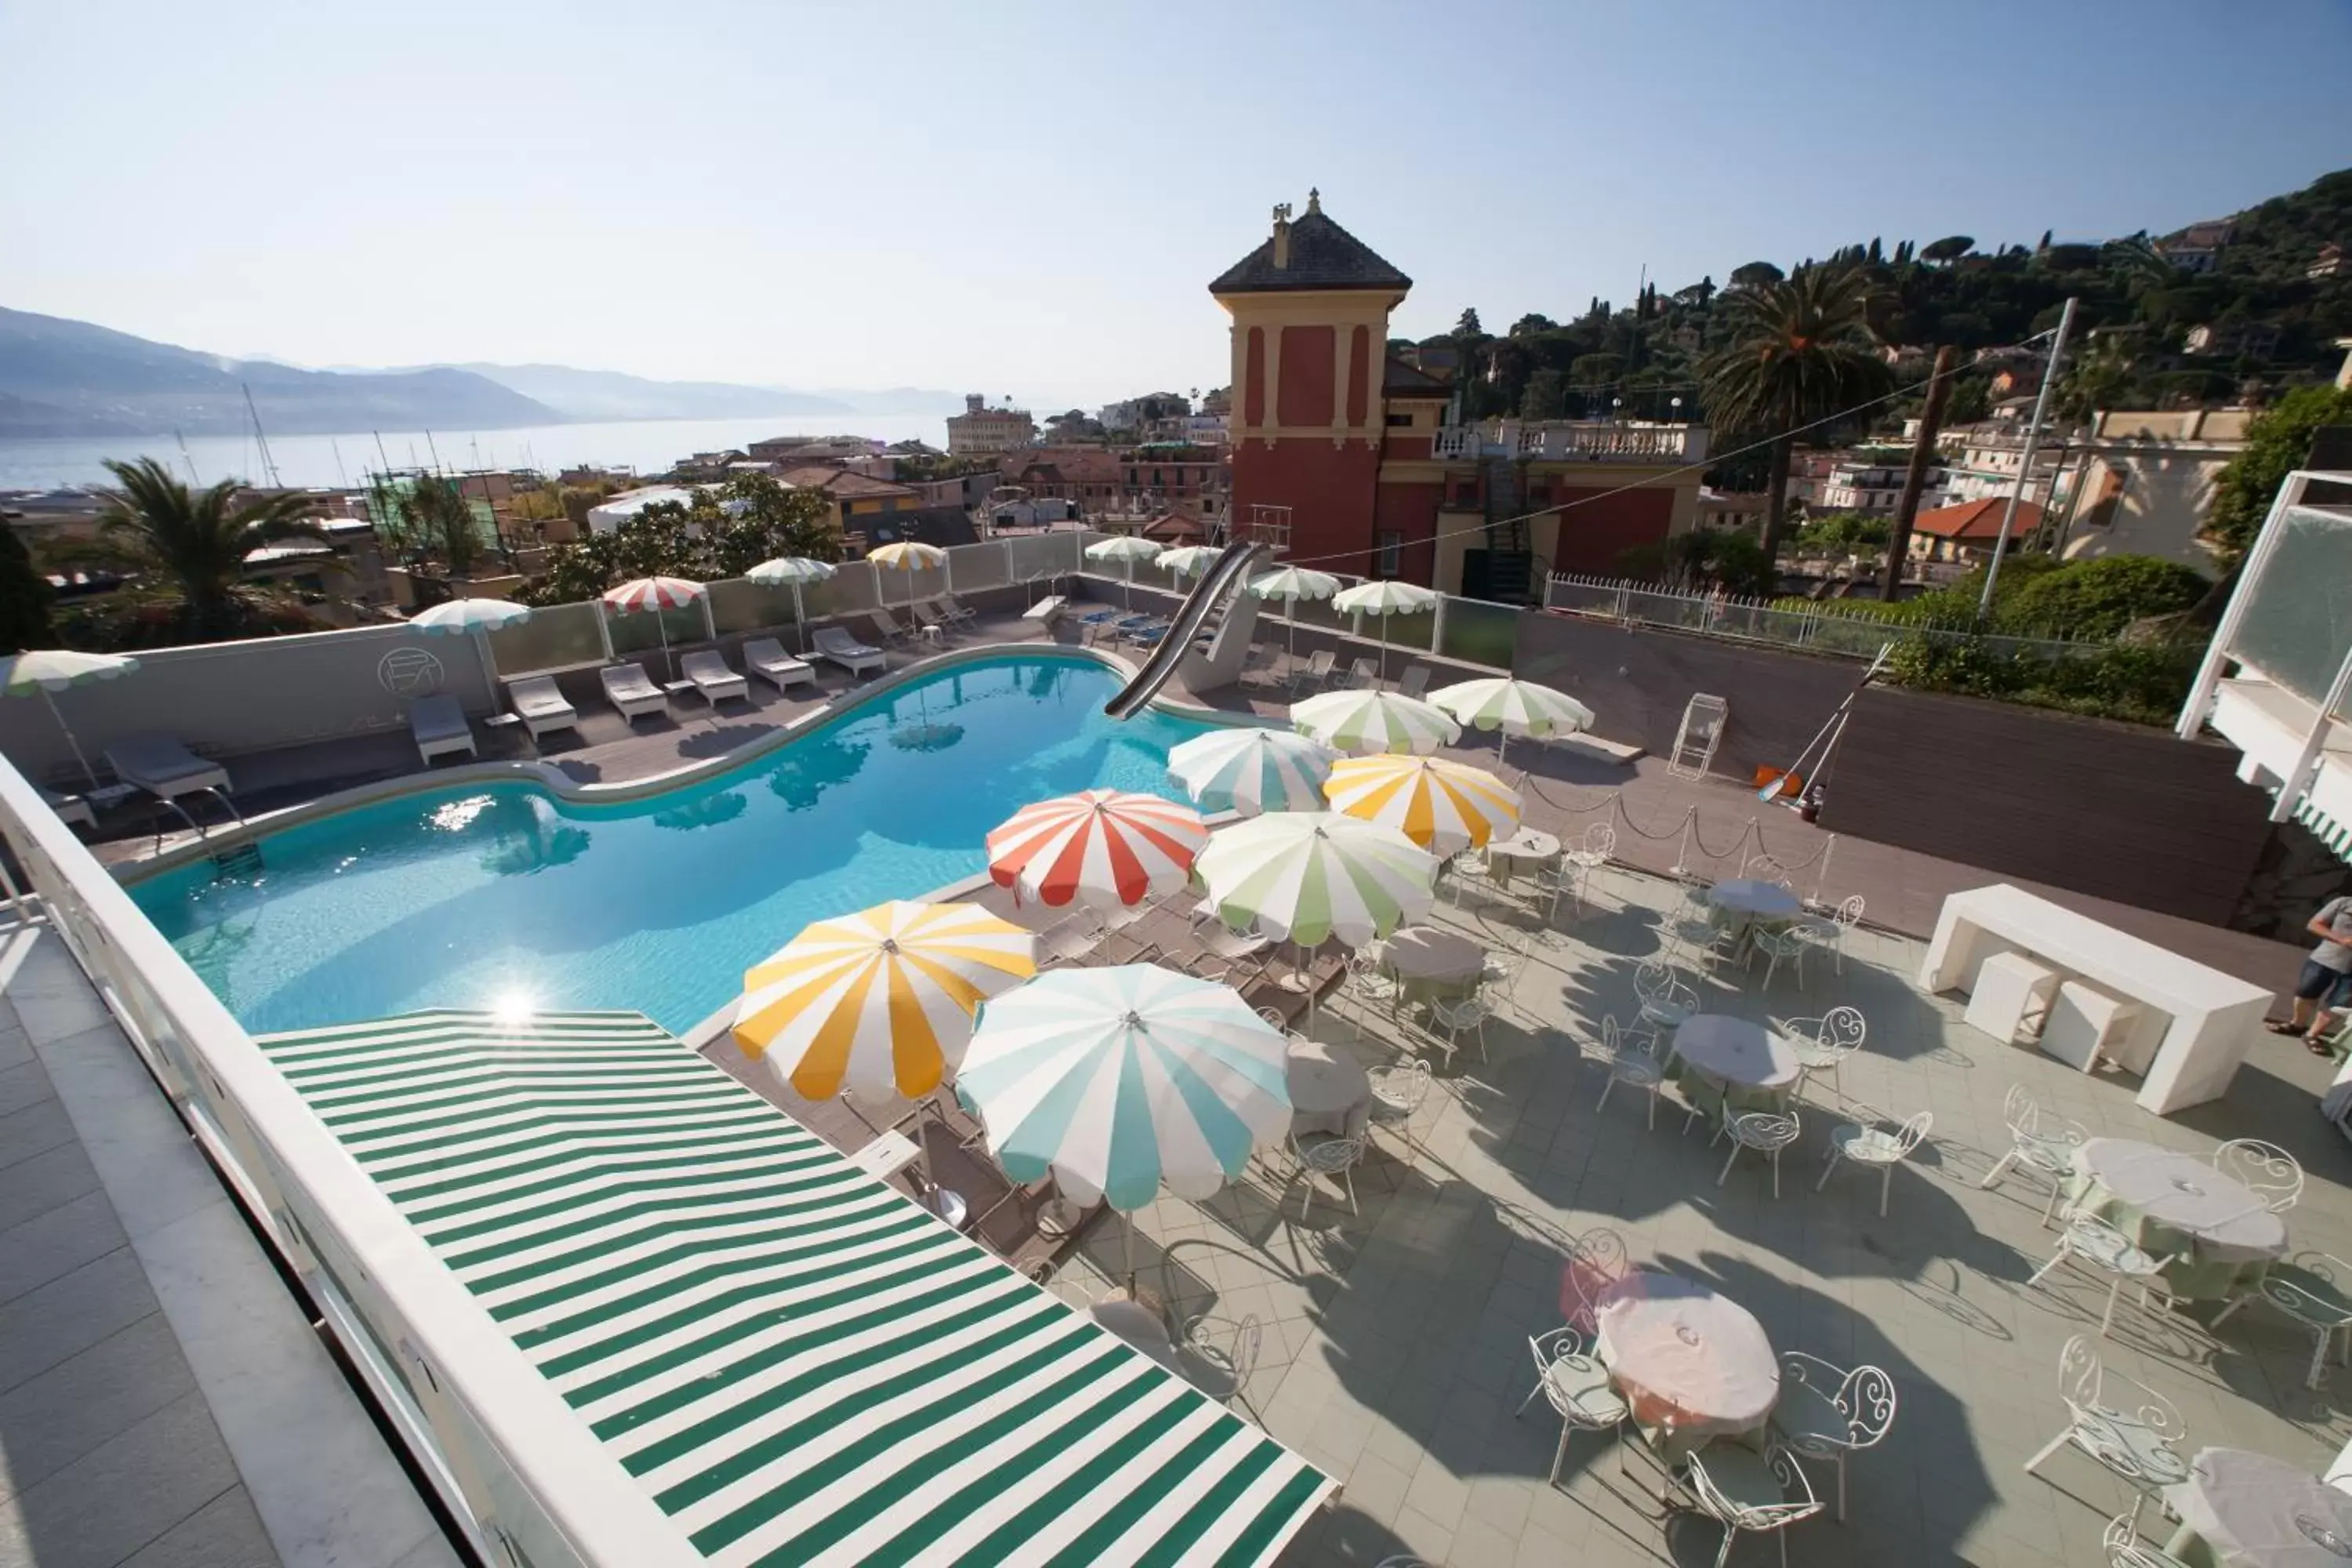 Pool View in B&B Hotels Park Hotel Suisse Santa Margherita Ligure